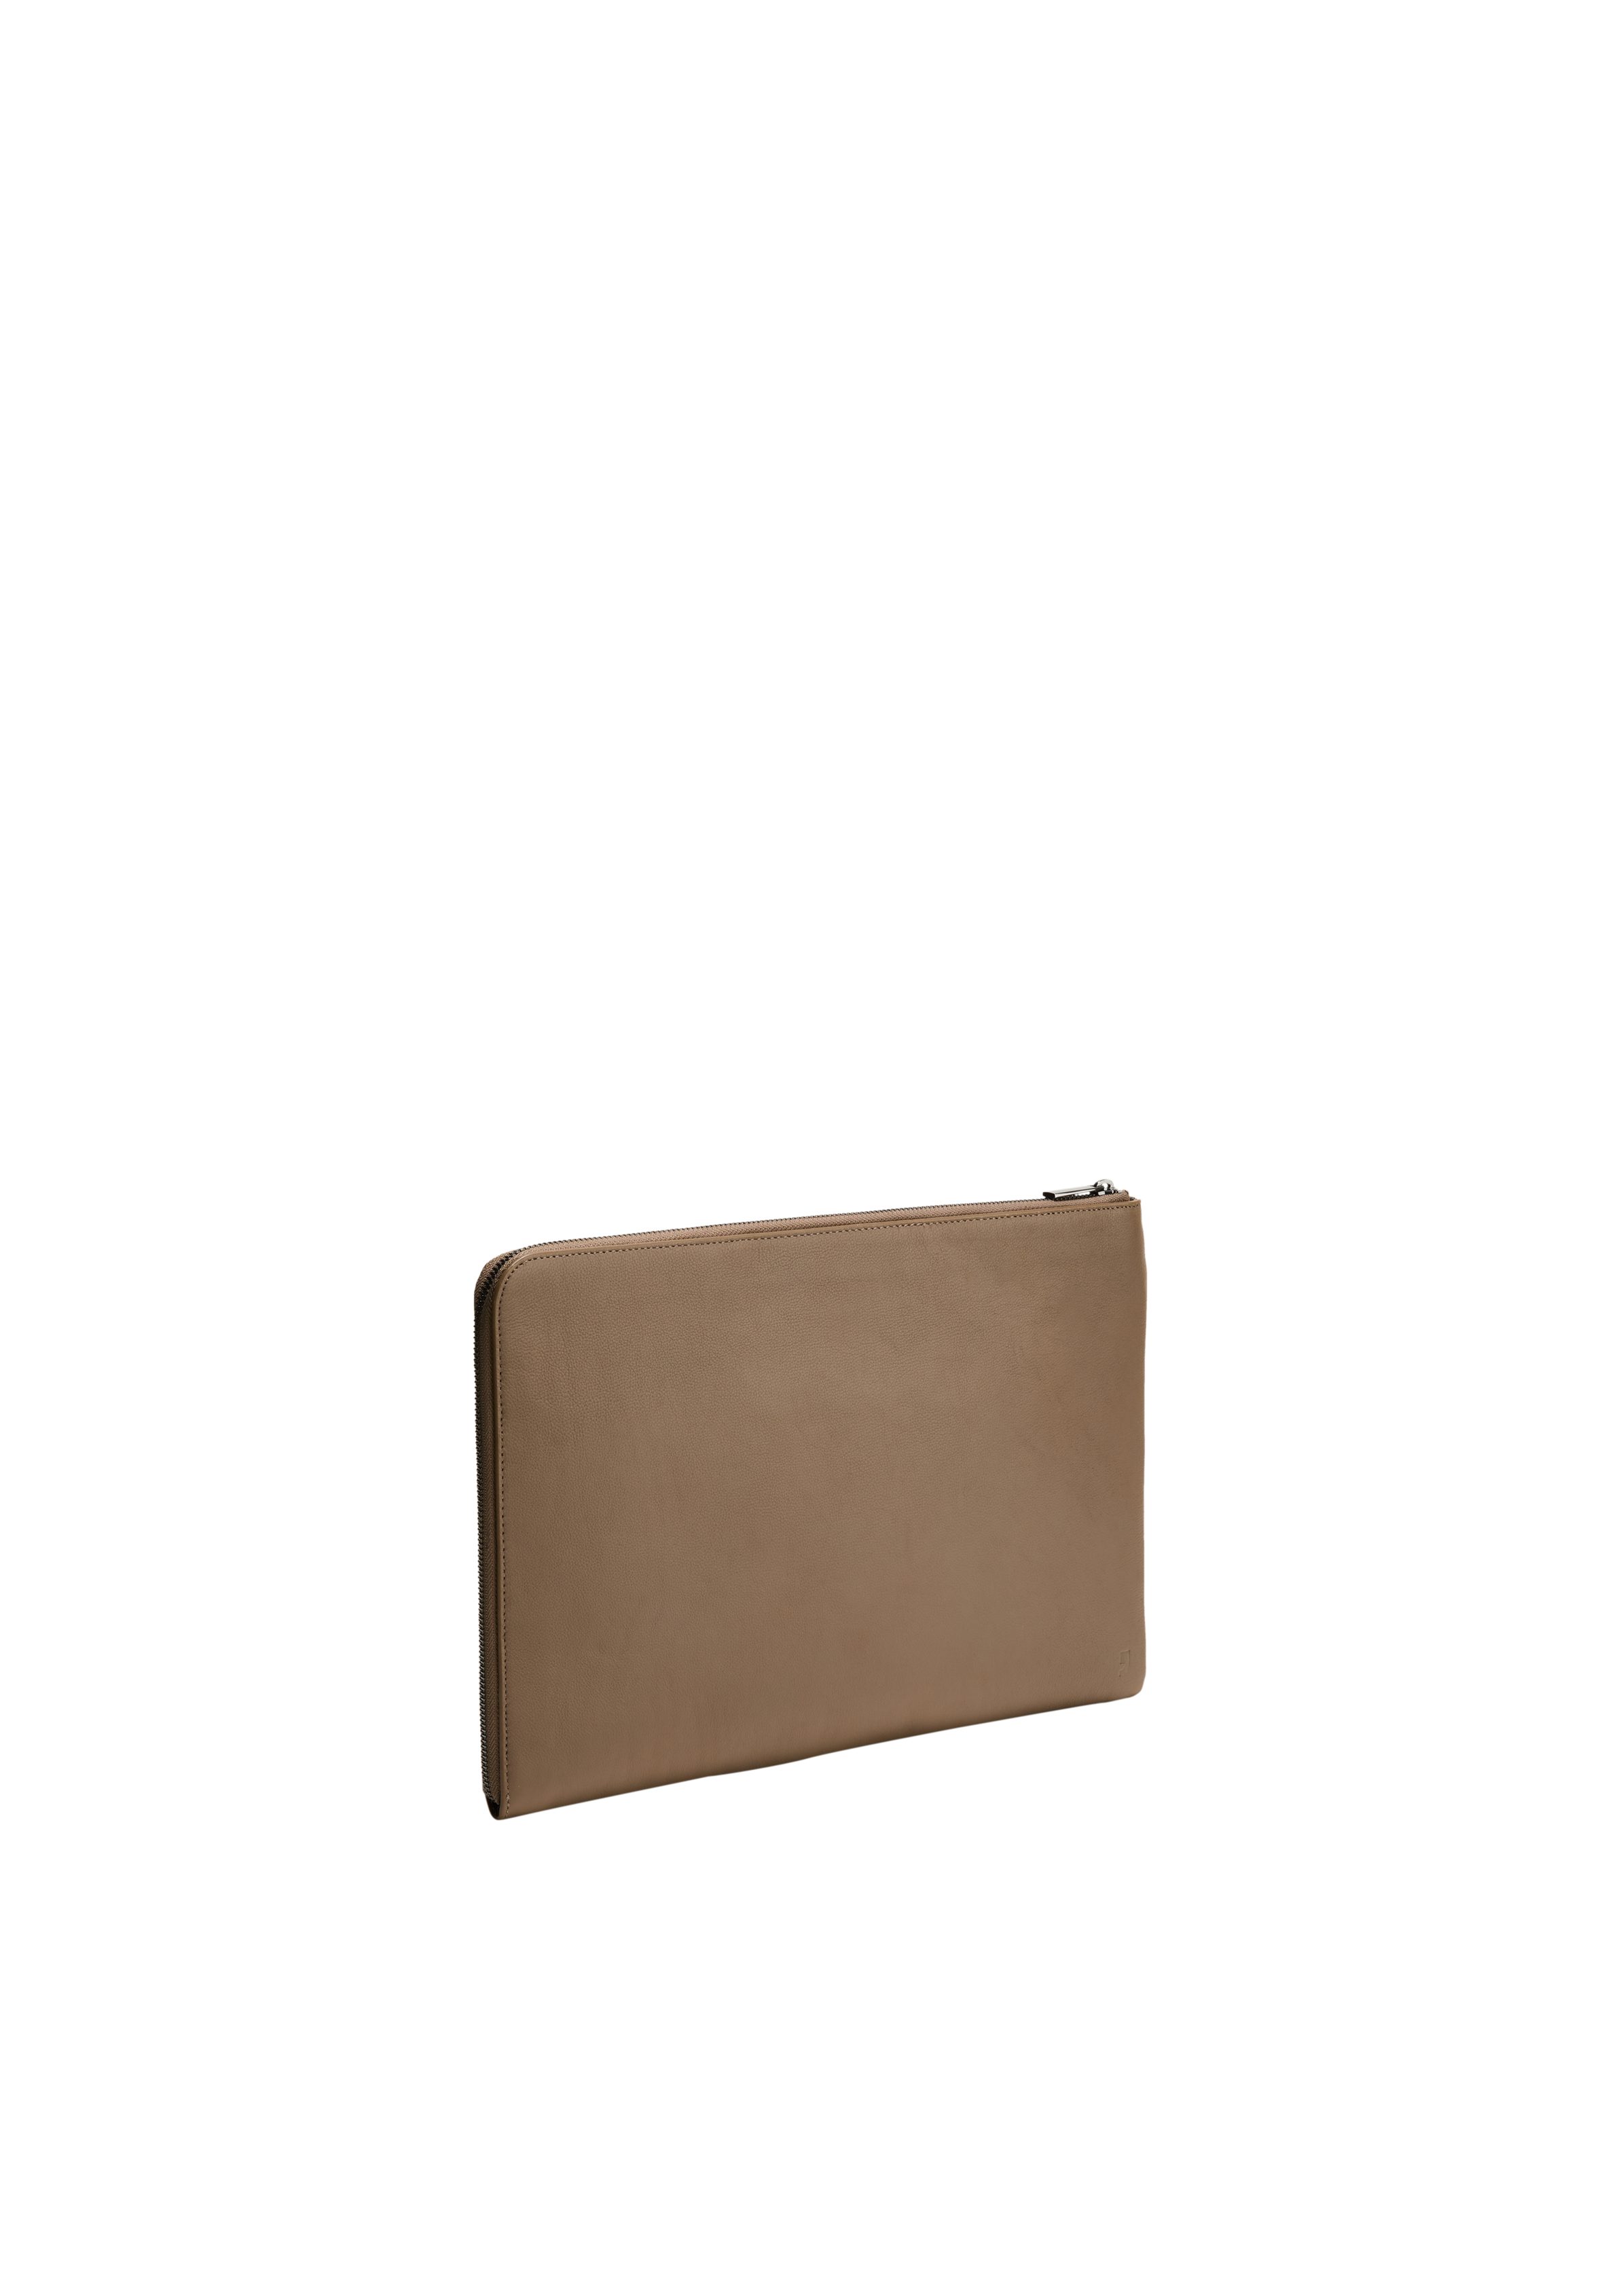 Comma Tragetasche Hochwertige Laptop-Tasche aus braun Logo Leder